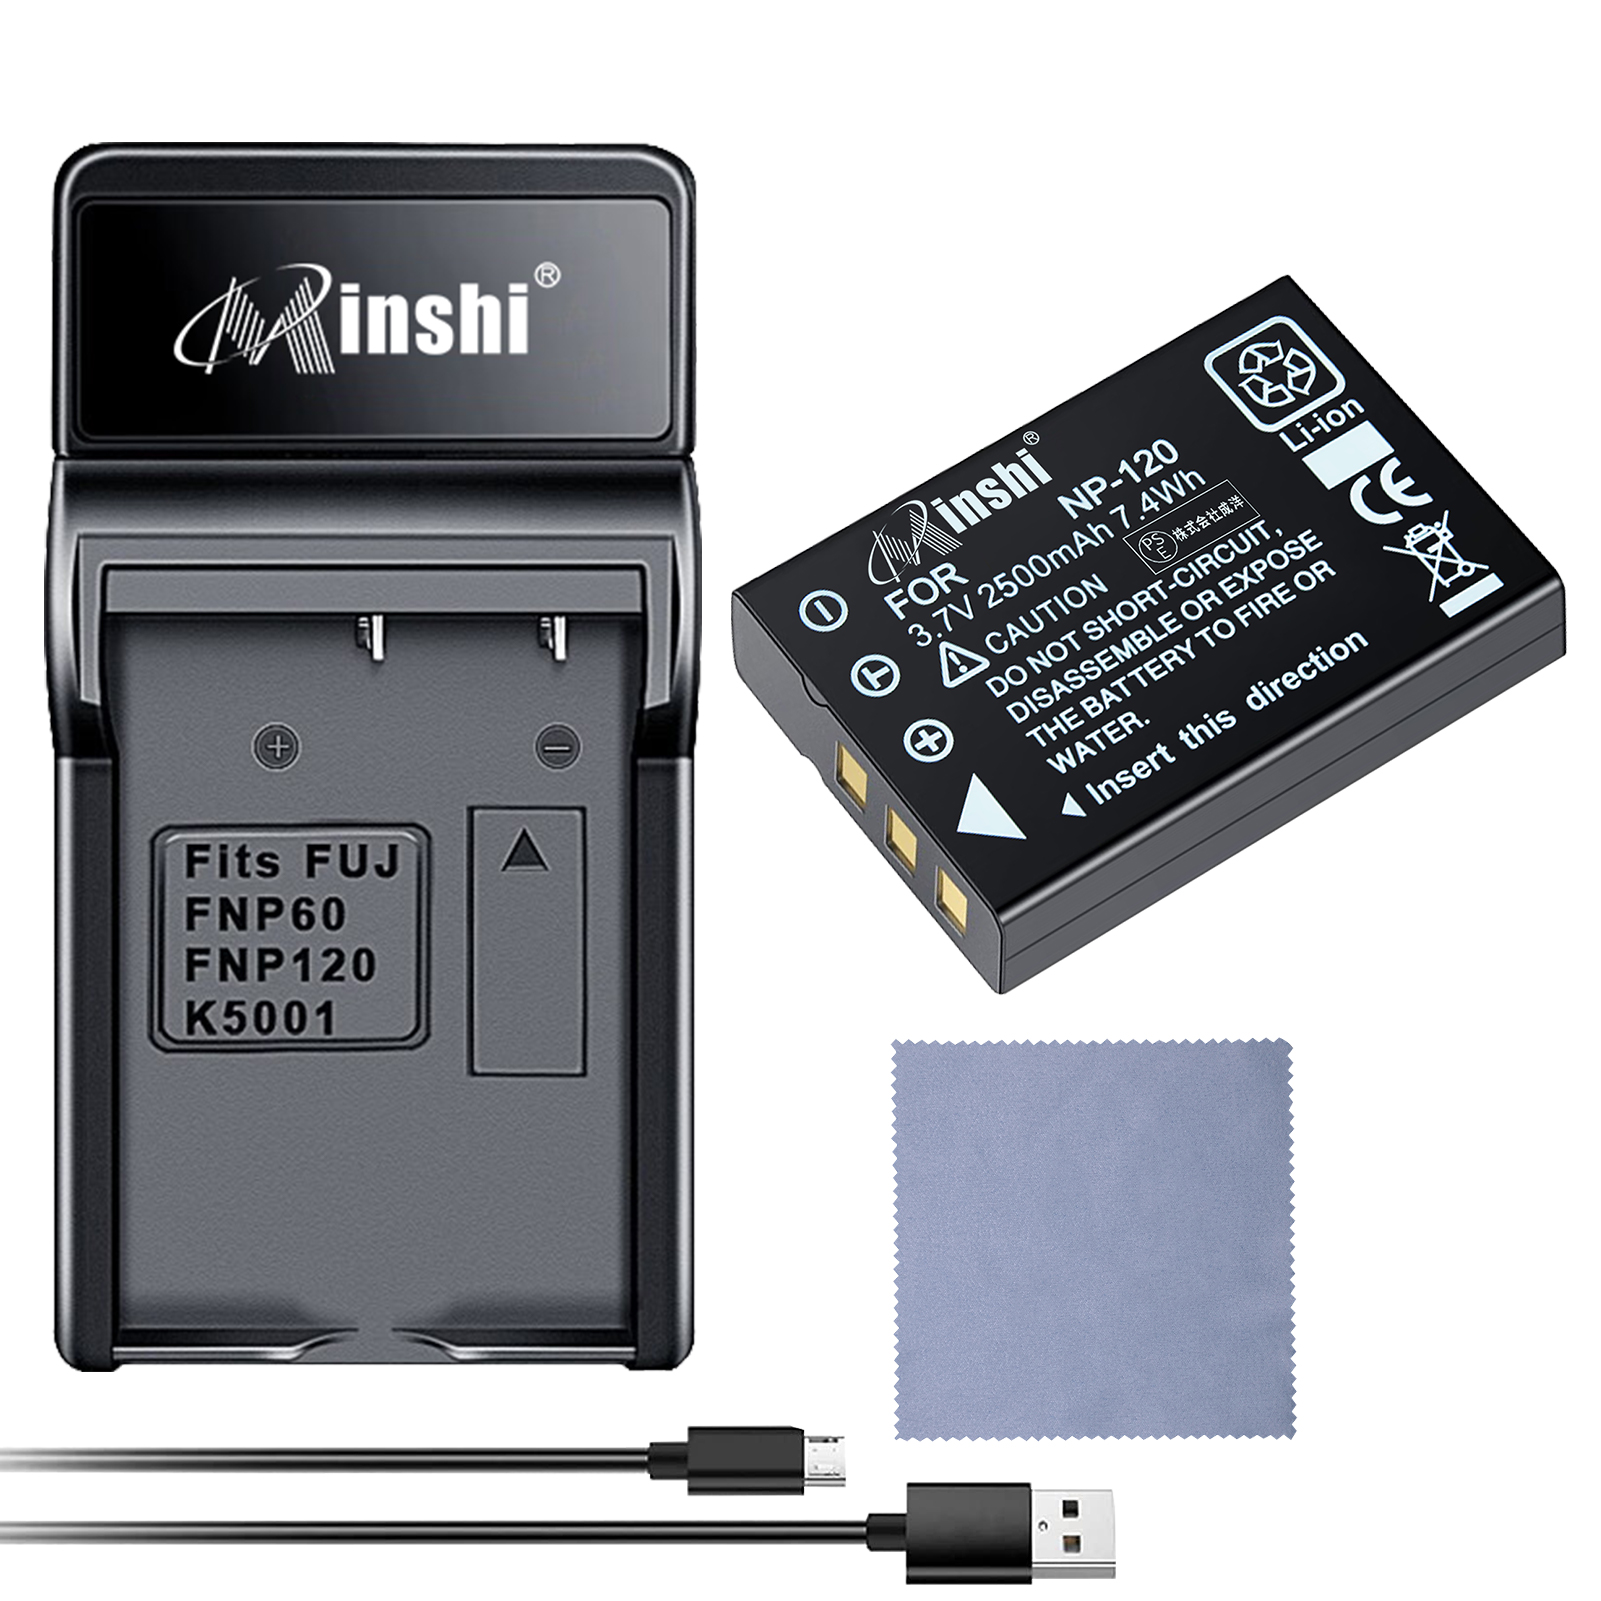 【セット】minshi FUJIFILM Caplio 400G wide NP-120 【2500mAh 3.7V】 高品質交換用バッテリー